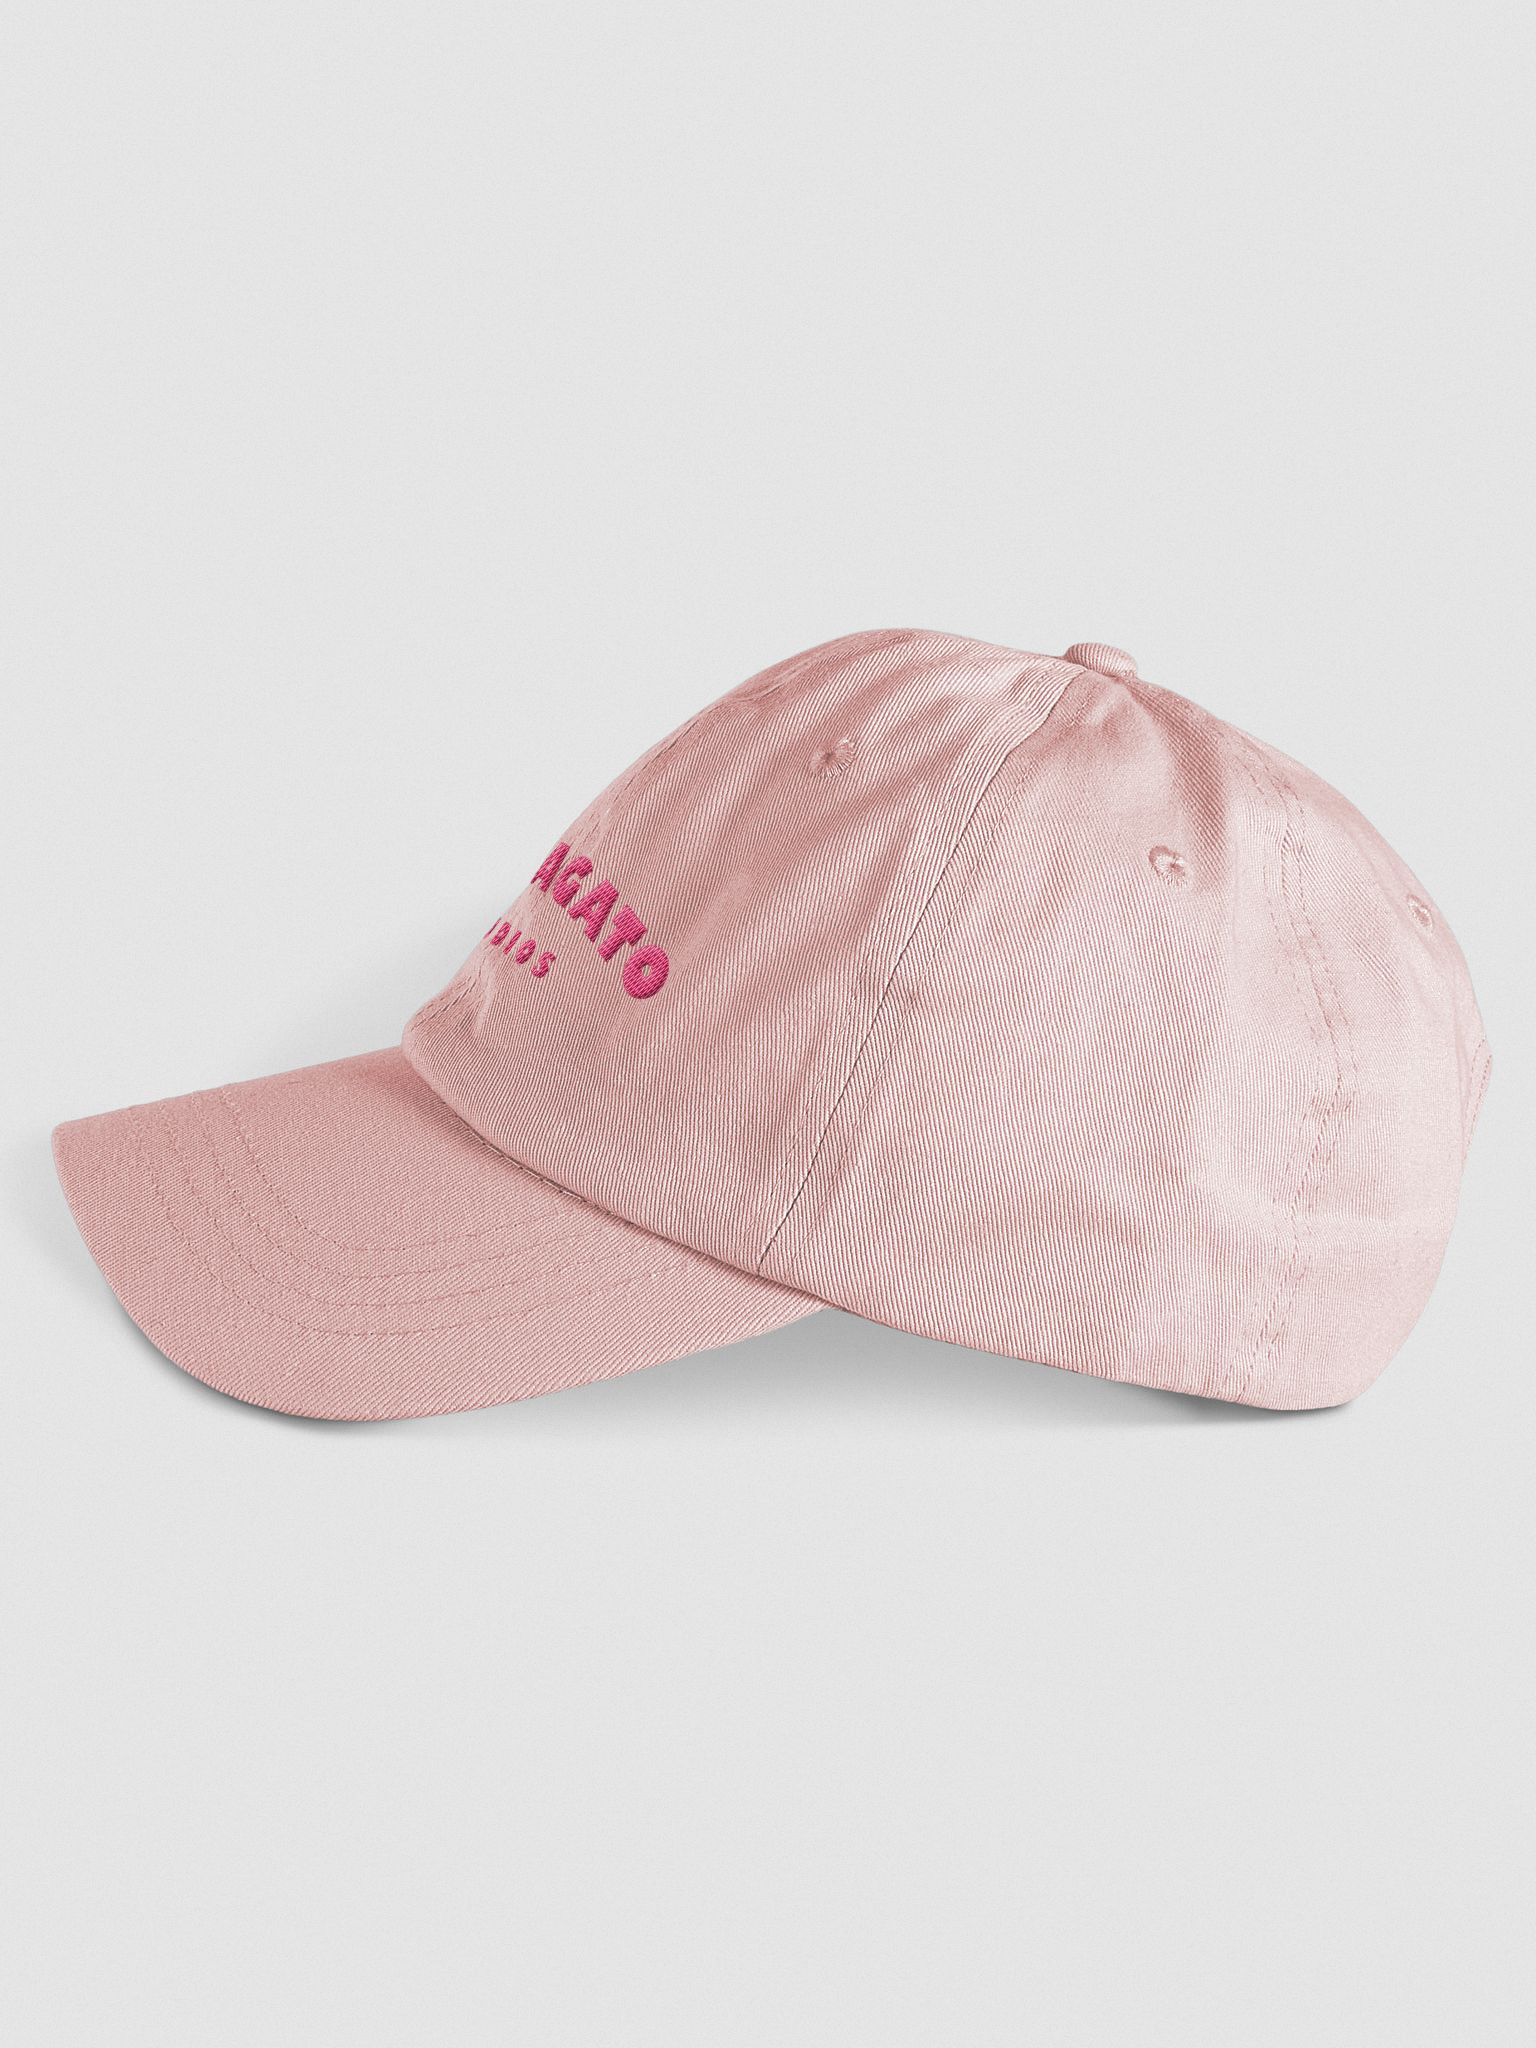 Pastel Pink Santagato Studios Hat | Joe Santagato